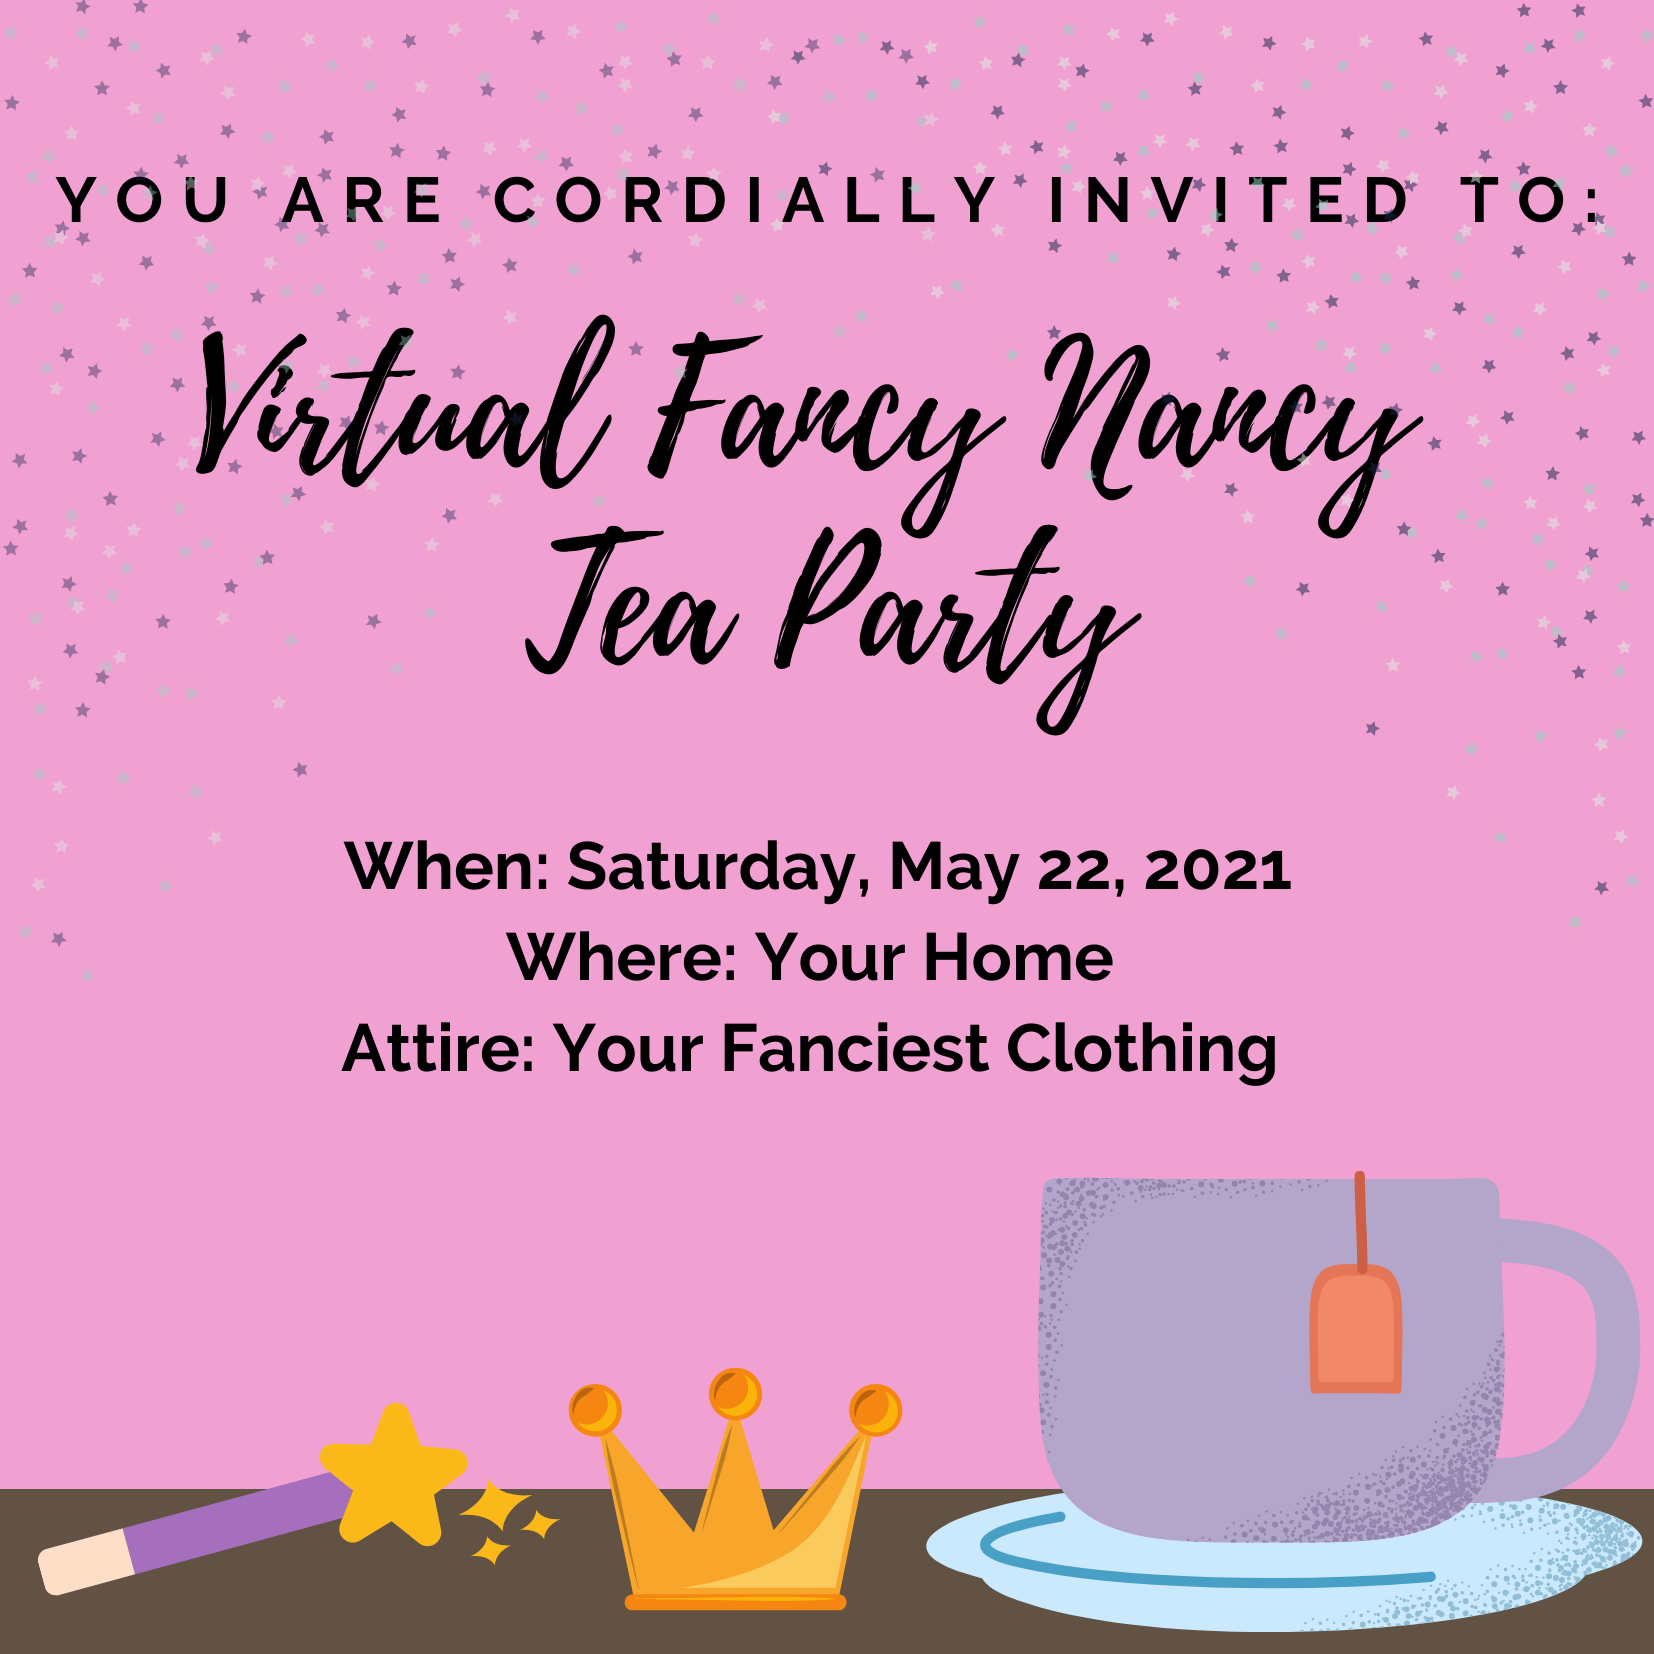 Fancy Nancy Tea Party Invite